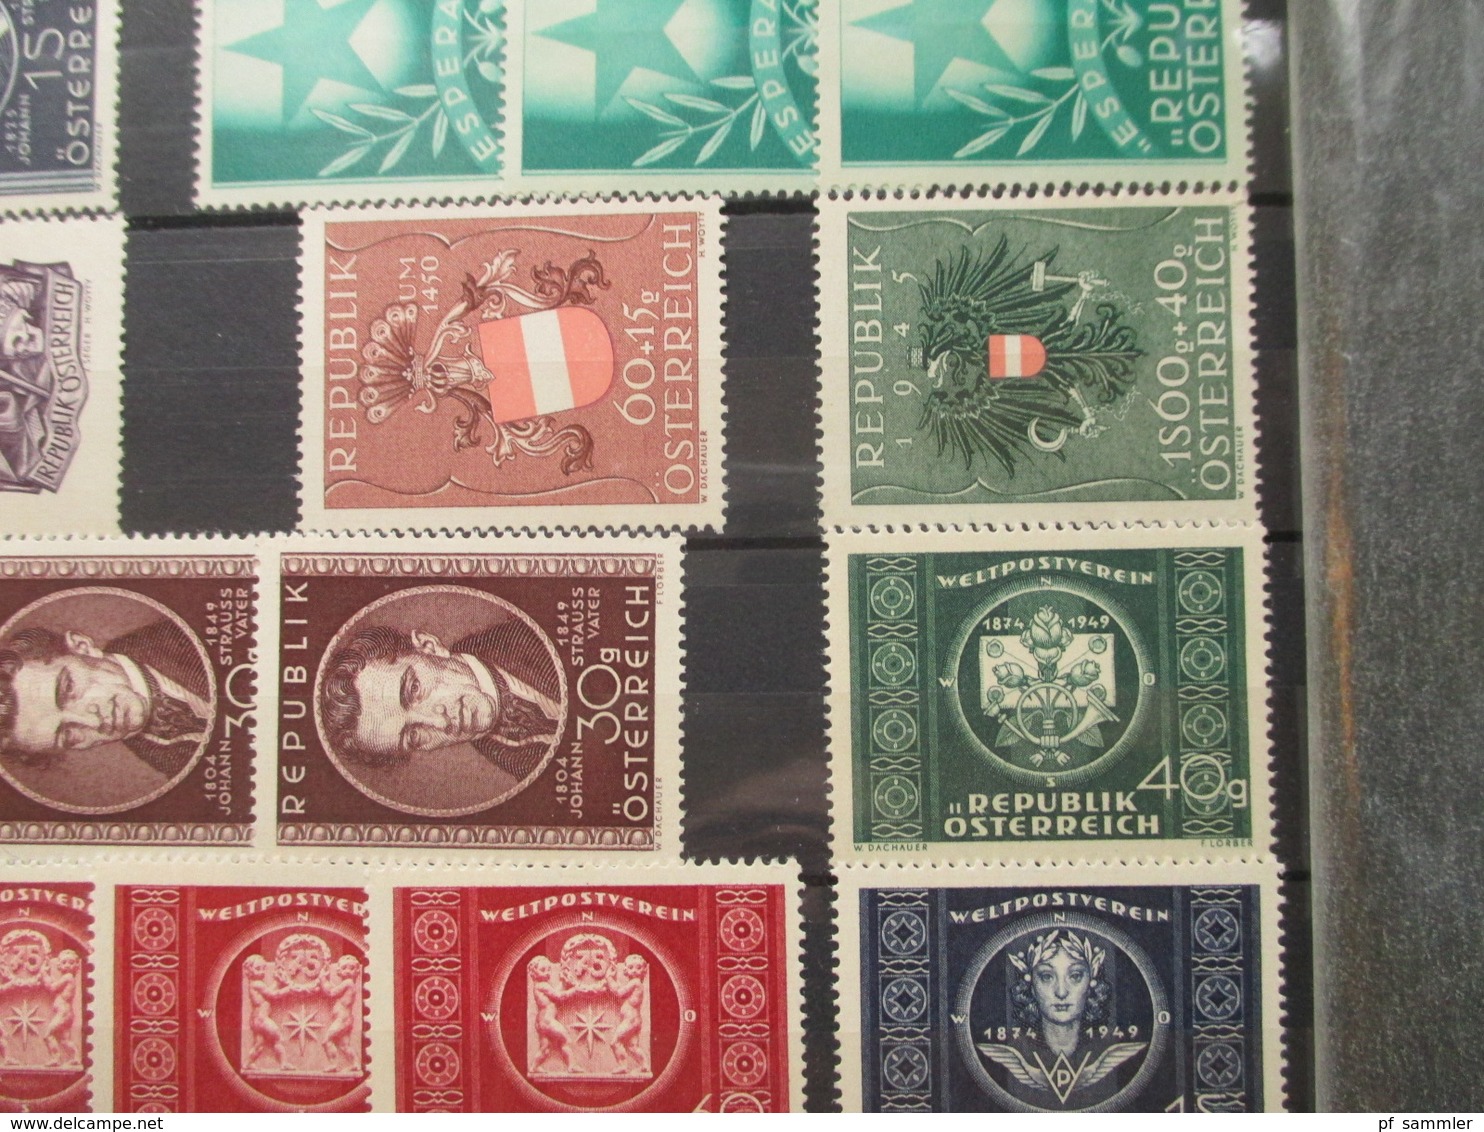 Österreich 1945 - 55 Sammlung mit vielen Marken und Sätzen! ** / postfrisch! teils 2 fach!!! ordentlicher KW.